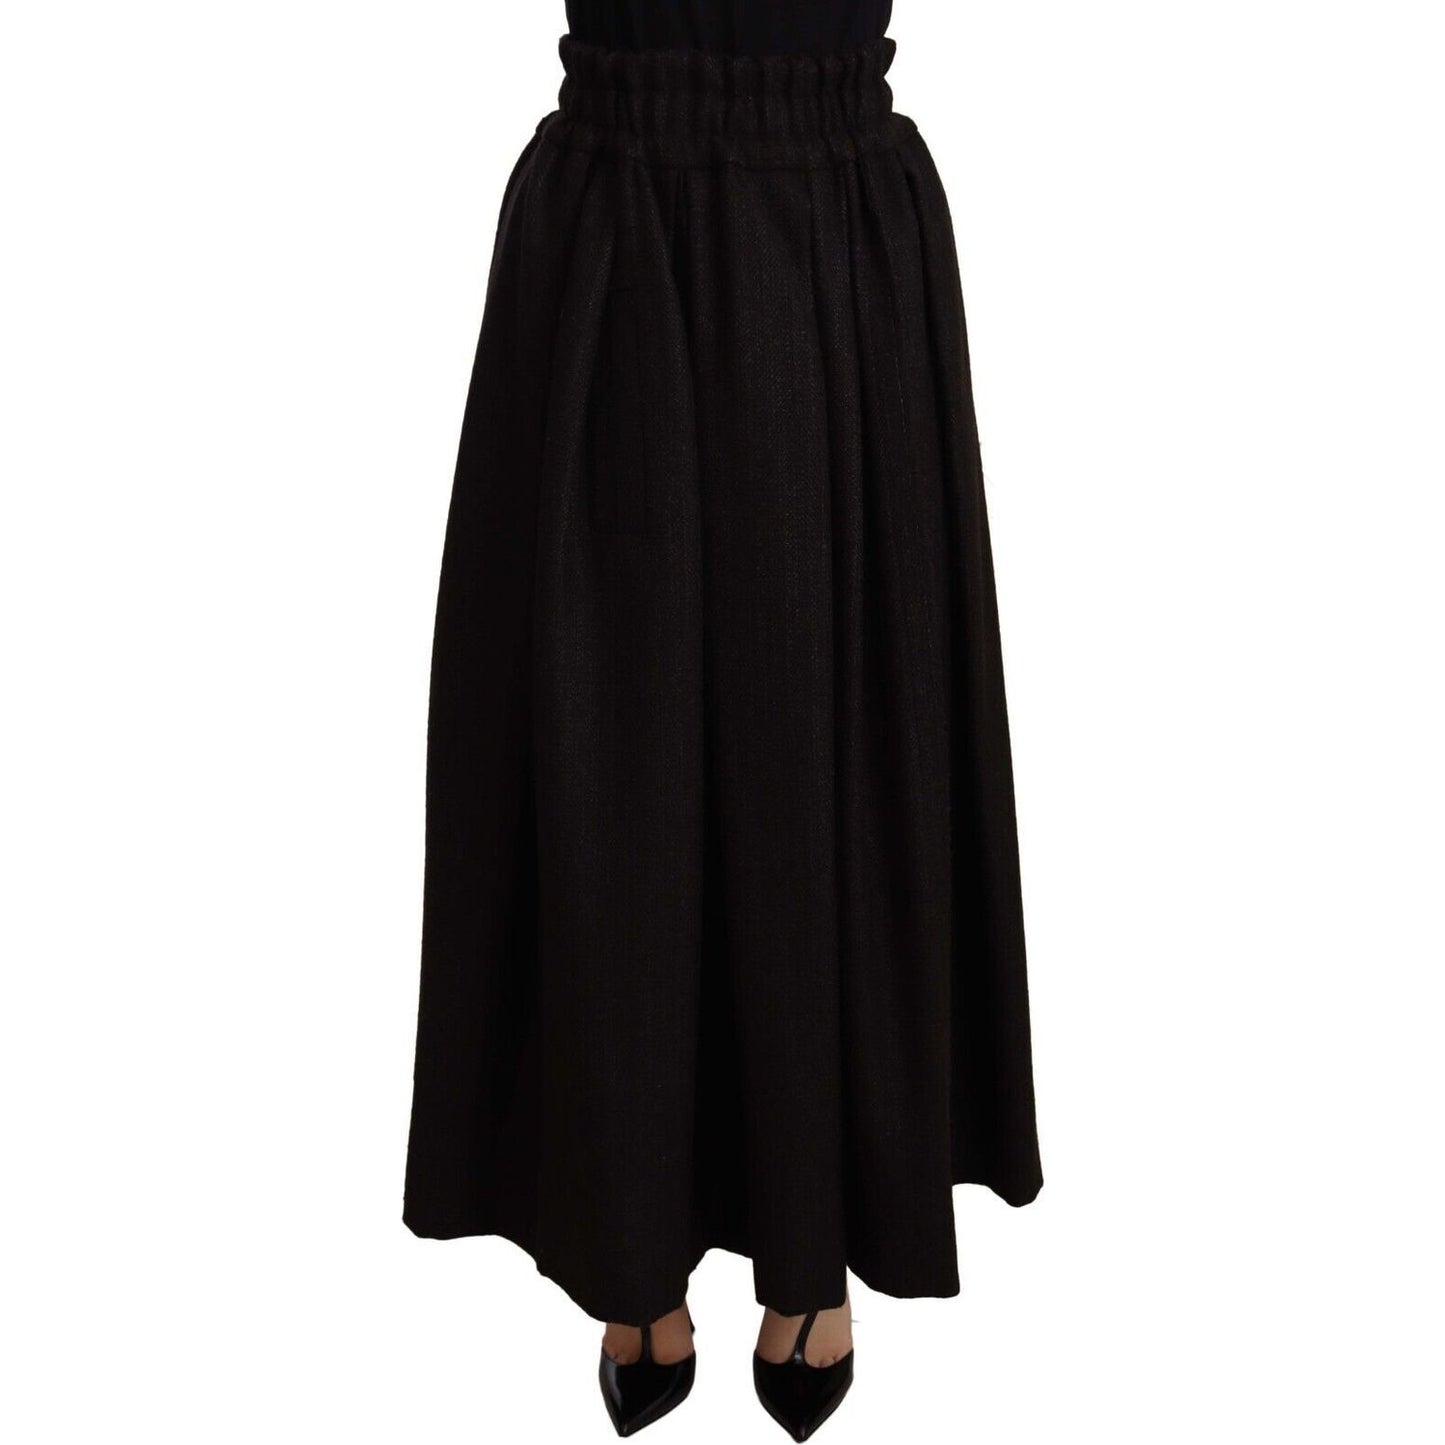 Dolce & Gabbana Elegant High Waist Maxi A-line Wool Skirt black-wool-high-waist-maxi-piece-skirt WOMAN SKIRTS s-l1600-2022-09-16T094249.208-a63b99c9-ba6.jpg